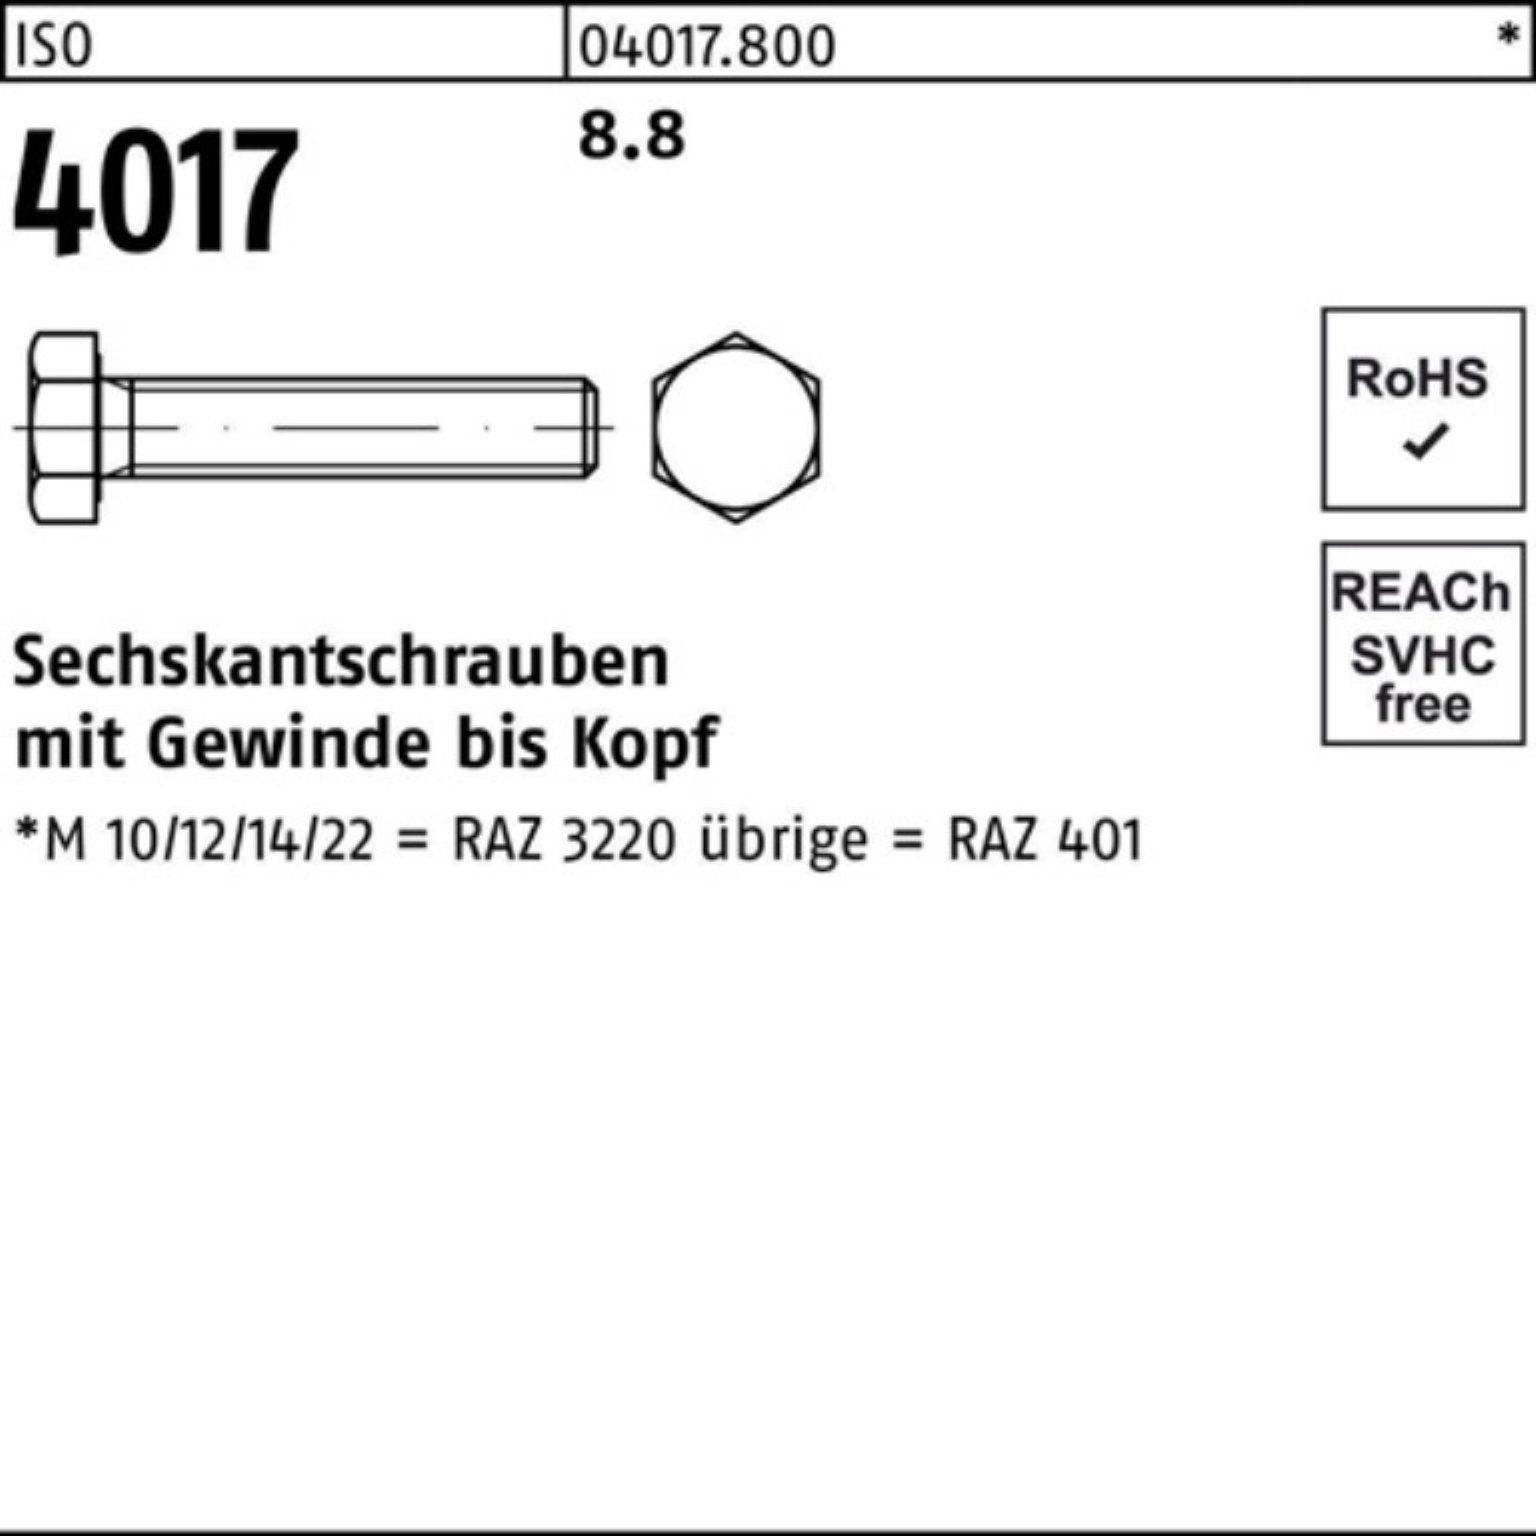 50 Bufab 110 8.8 Sechskantschraube Pack 4017 VG 40 Stück 100er ISO ISO Sechskantschraube M14x